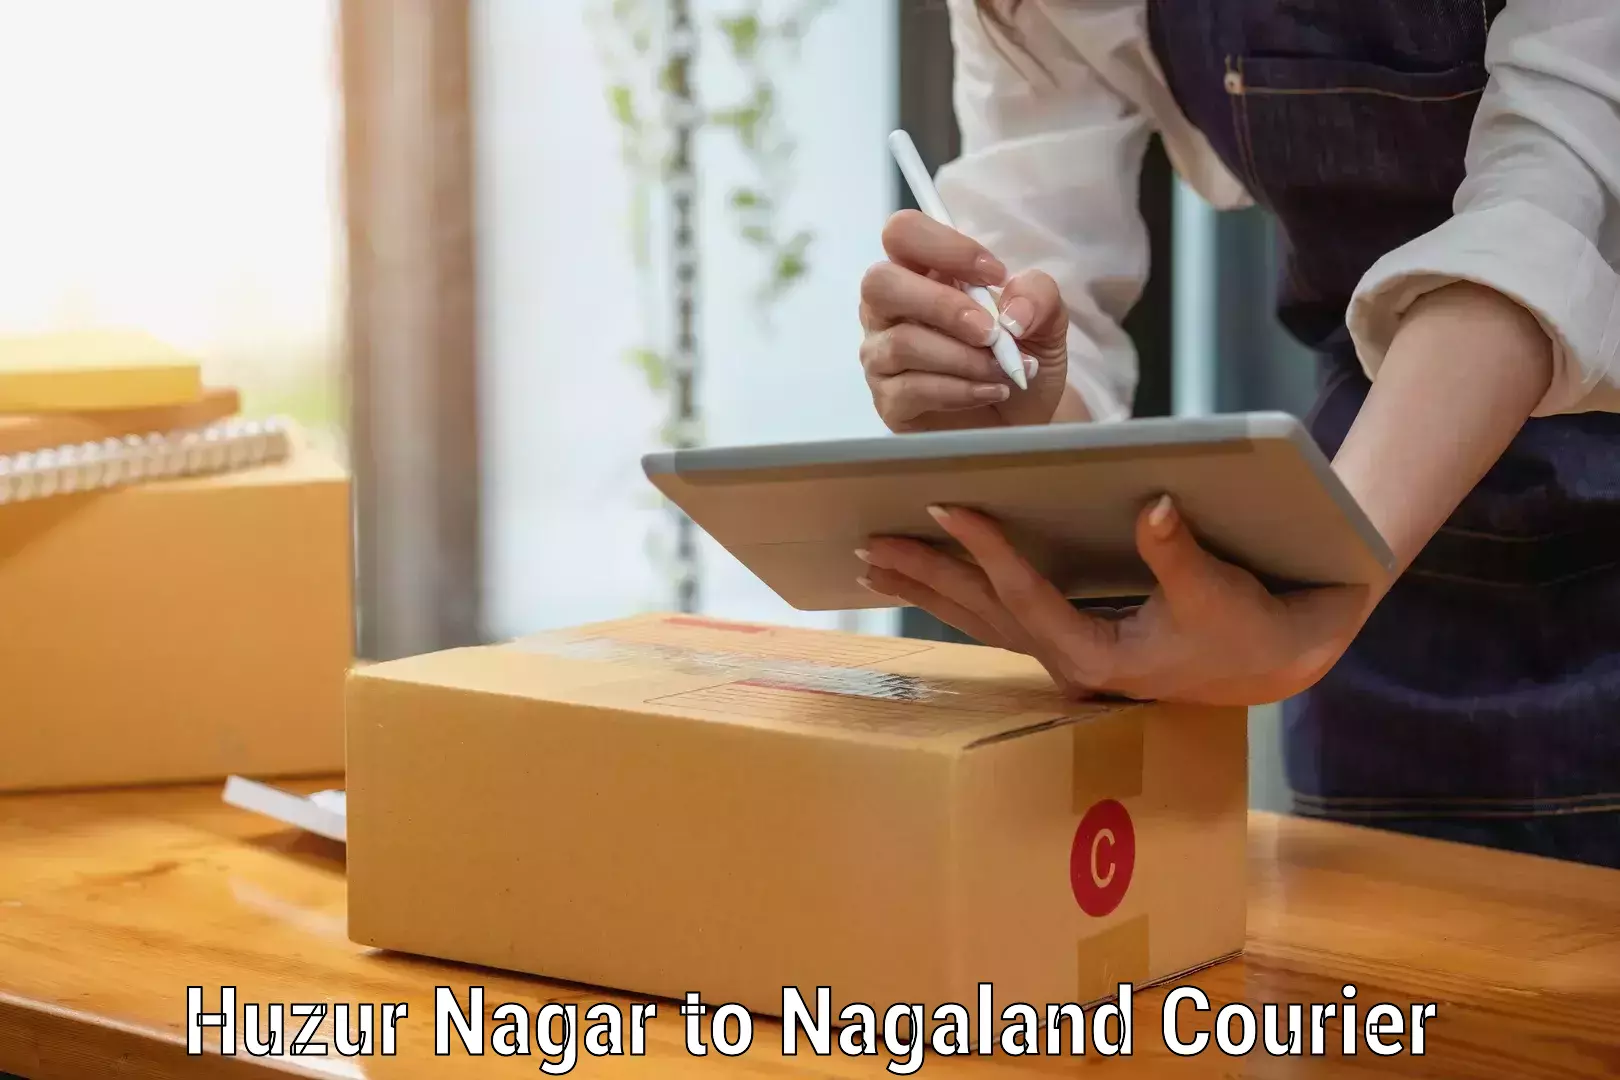 Professional moving company Huzur Nagar to Nagaland